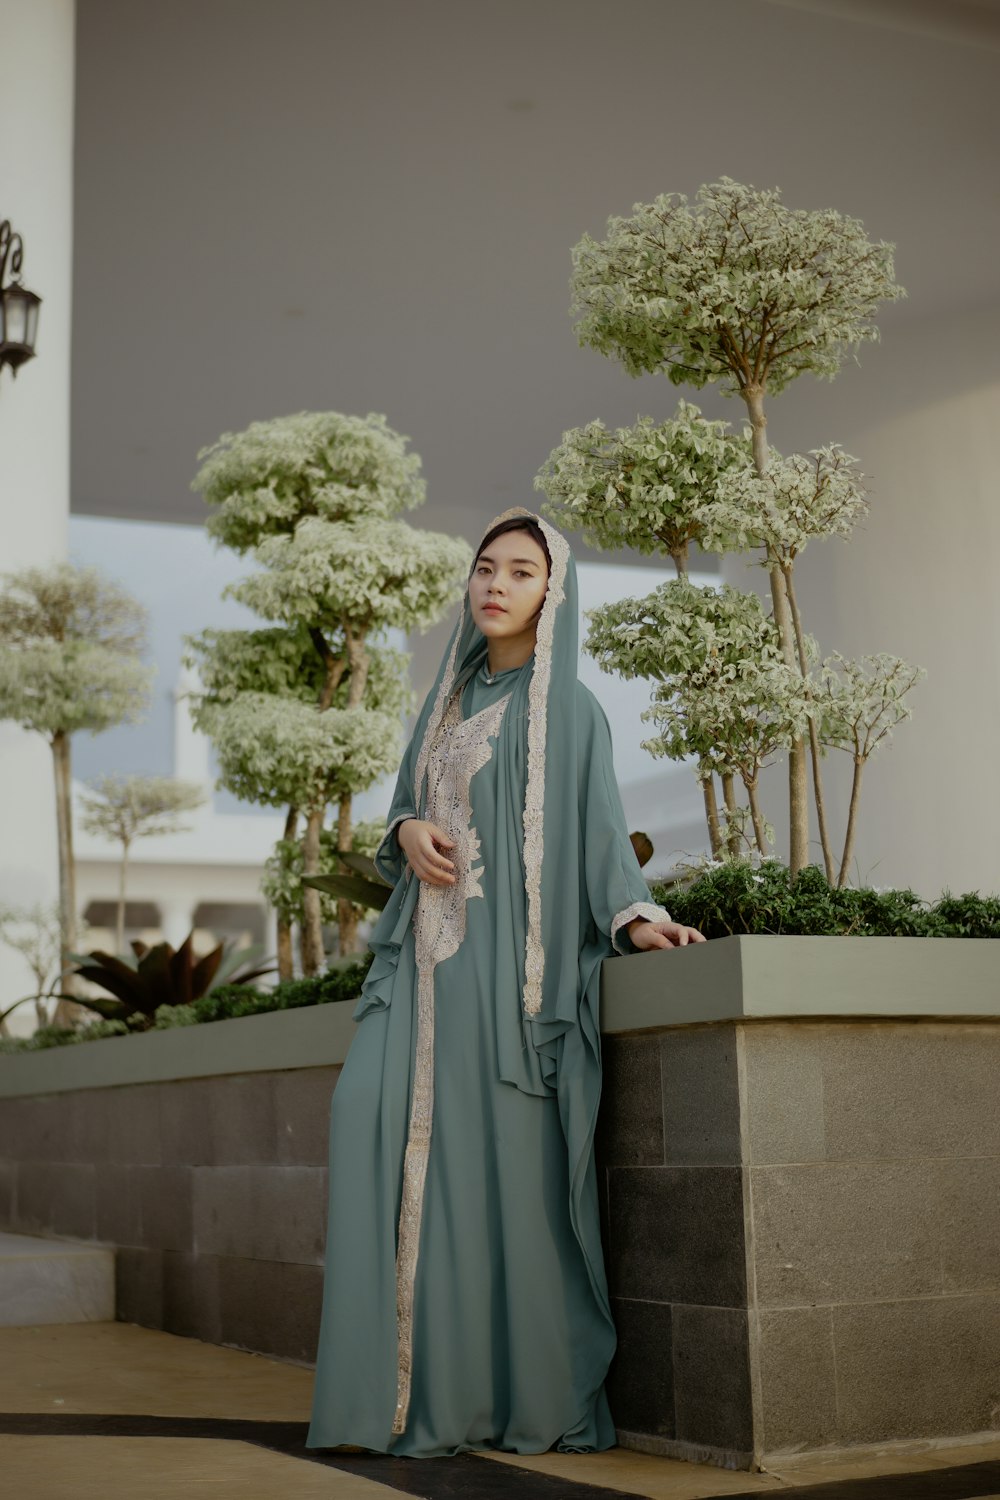 Mujer con hiyab gris de pie cerca de una planta verde durante el día